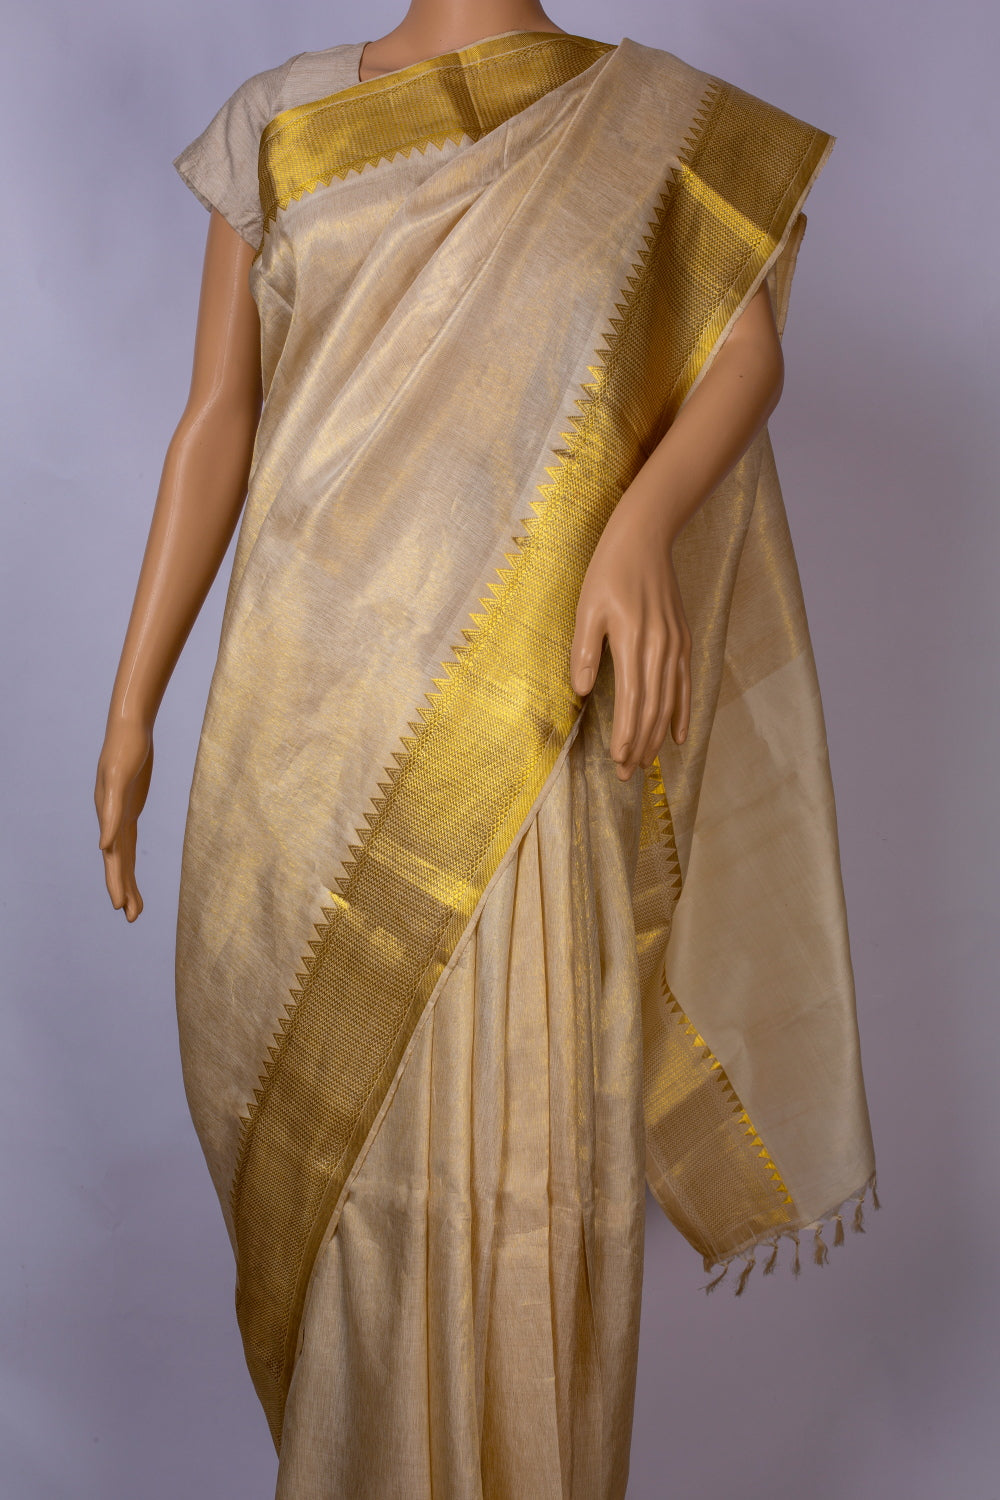 Kanjeevaram  Tissue Silk Sari